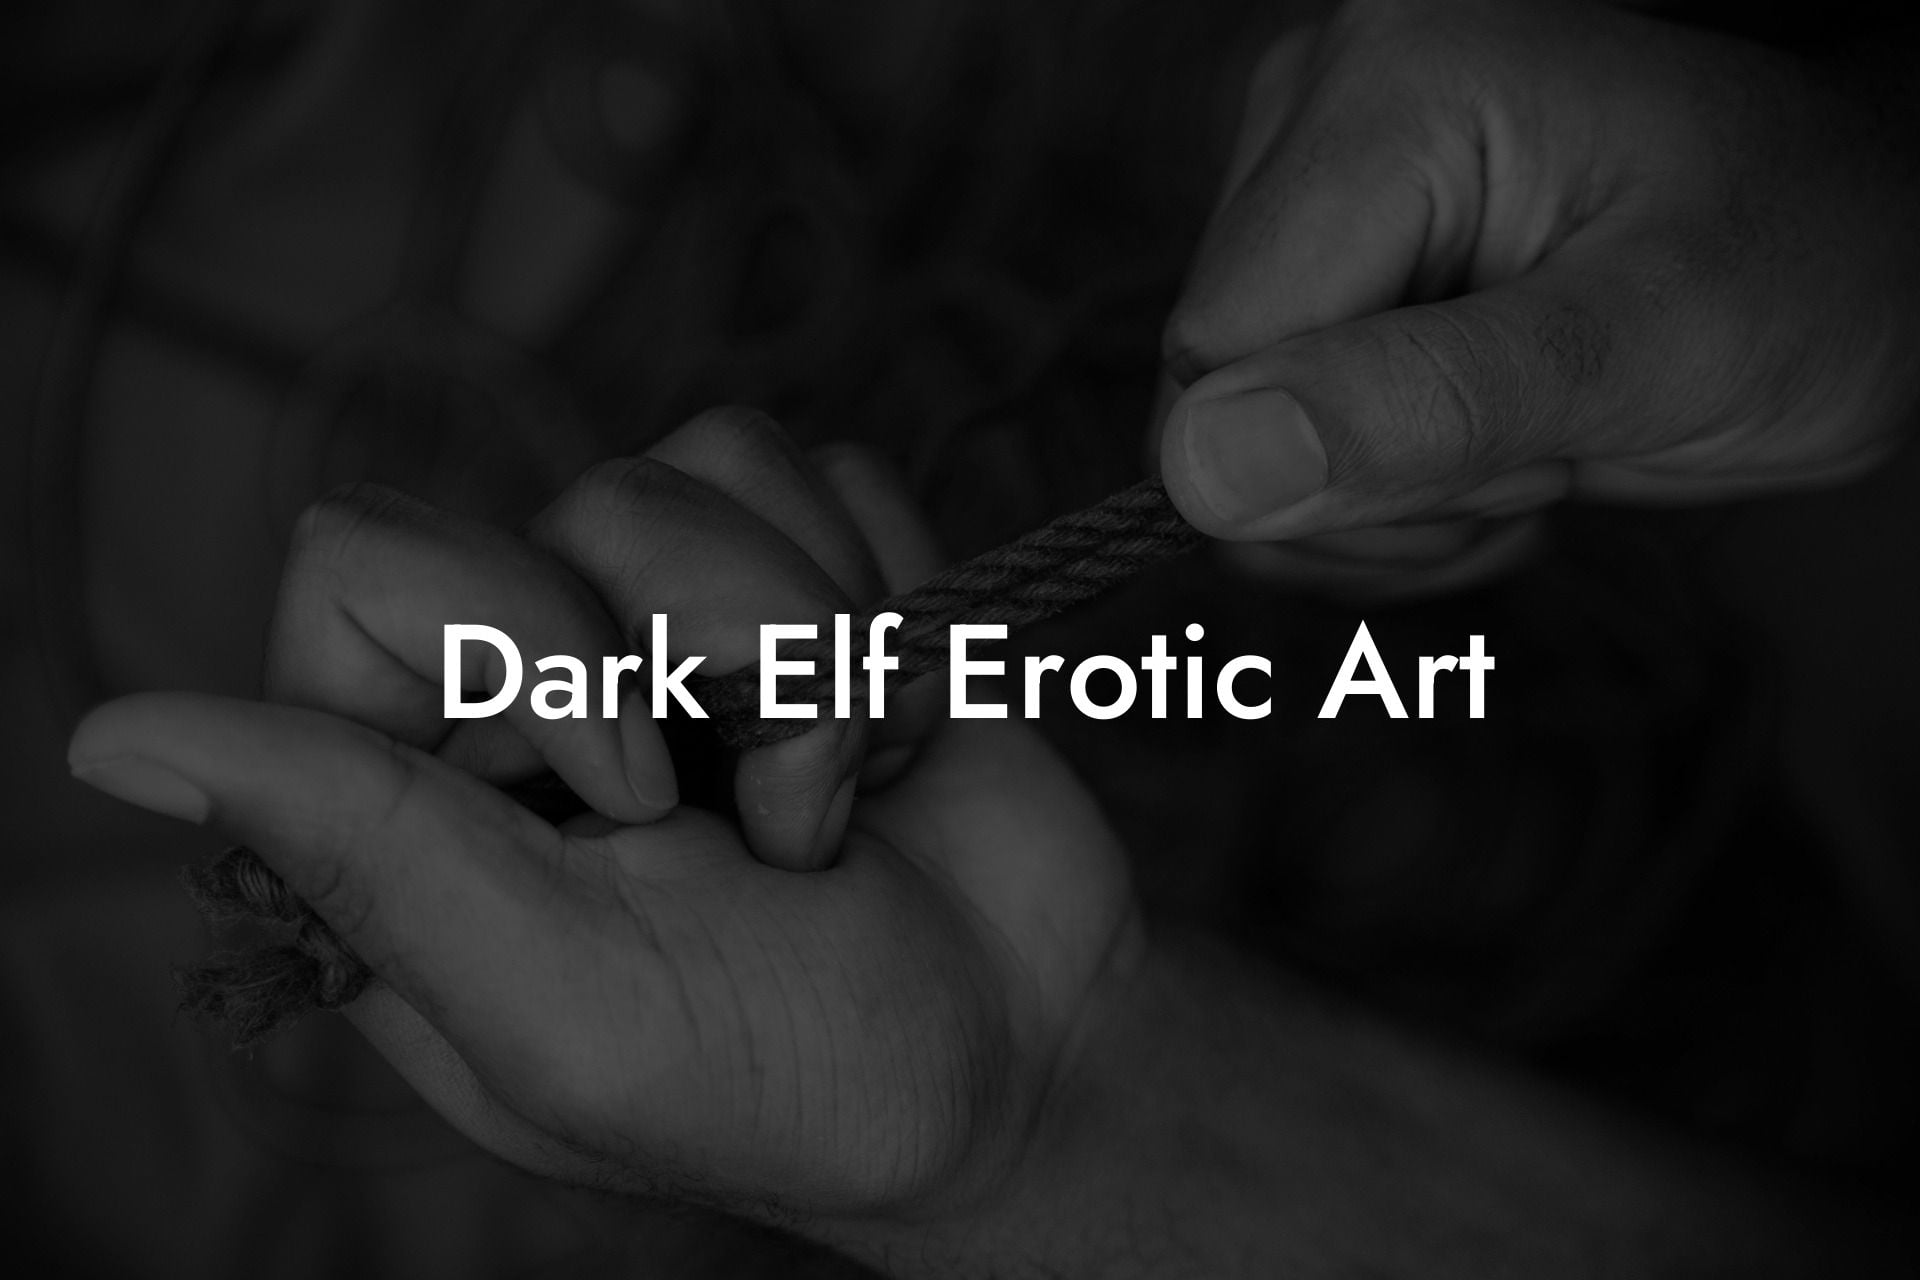 Dark Elf Erotic Art